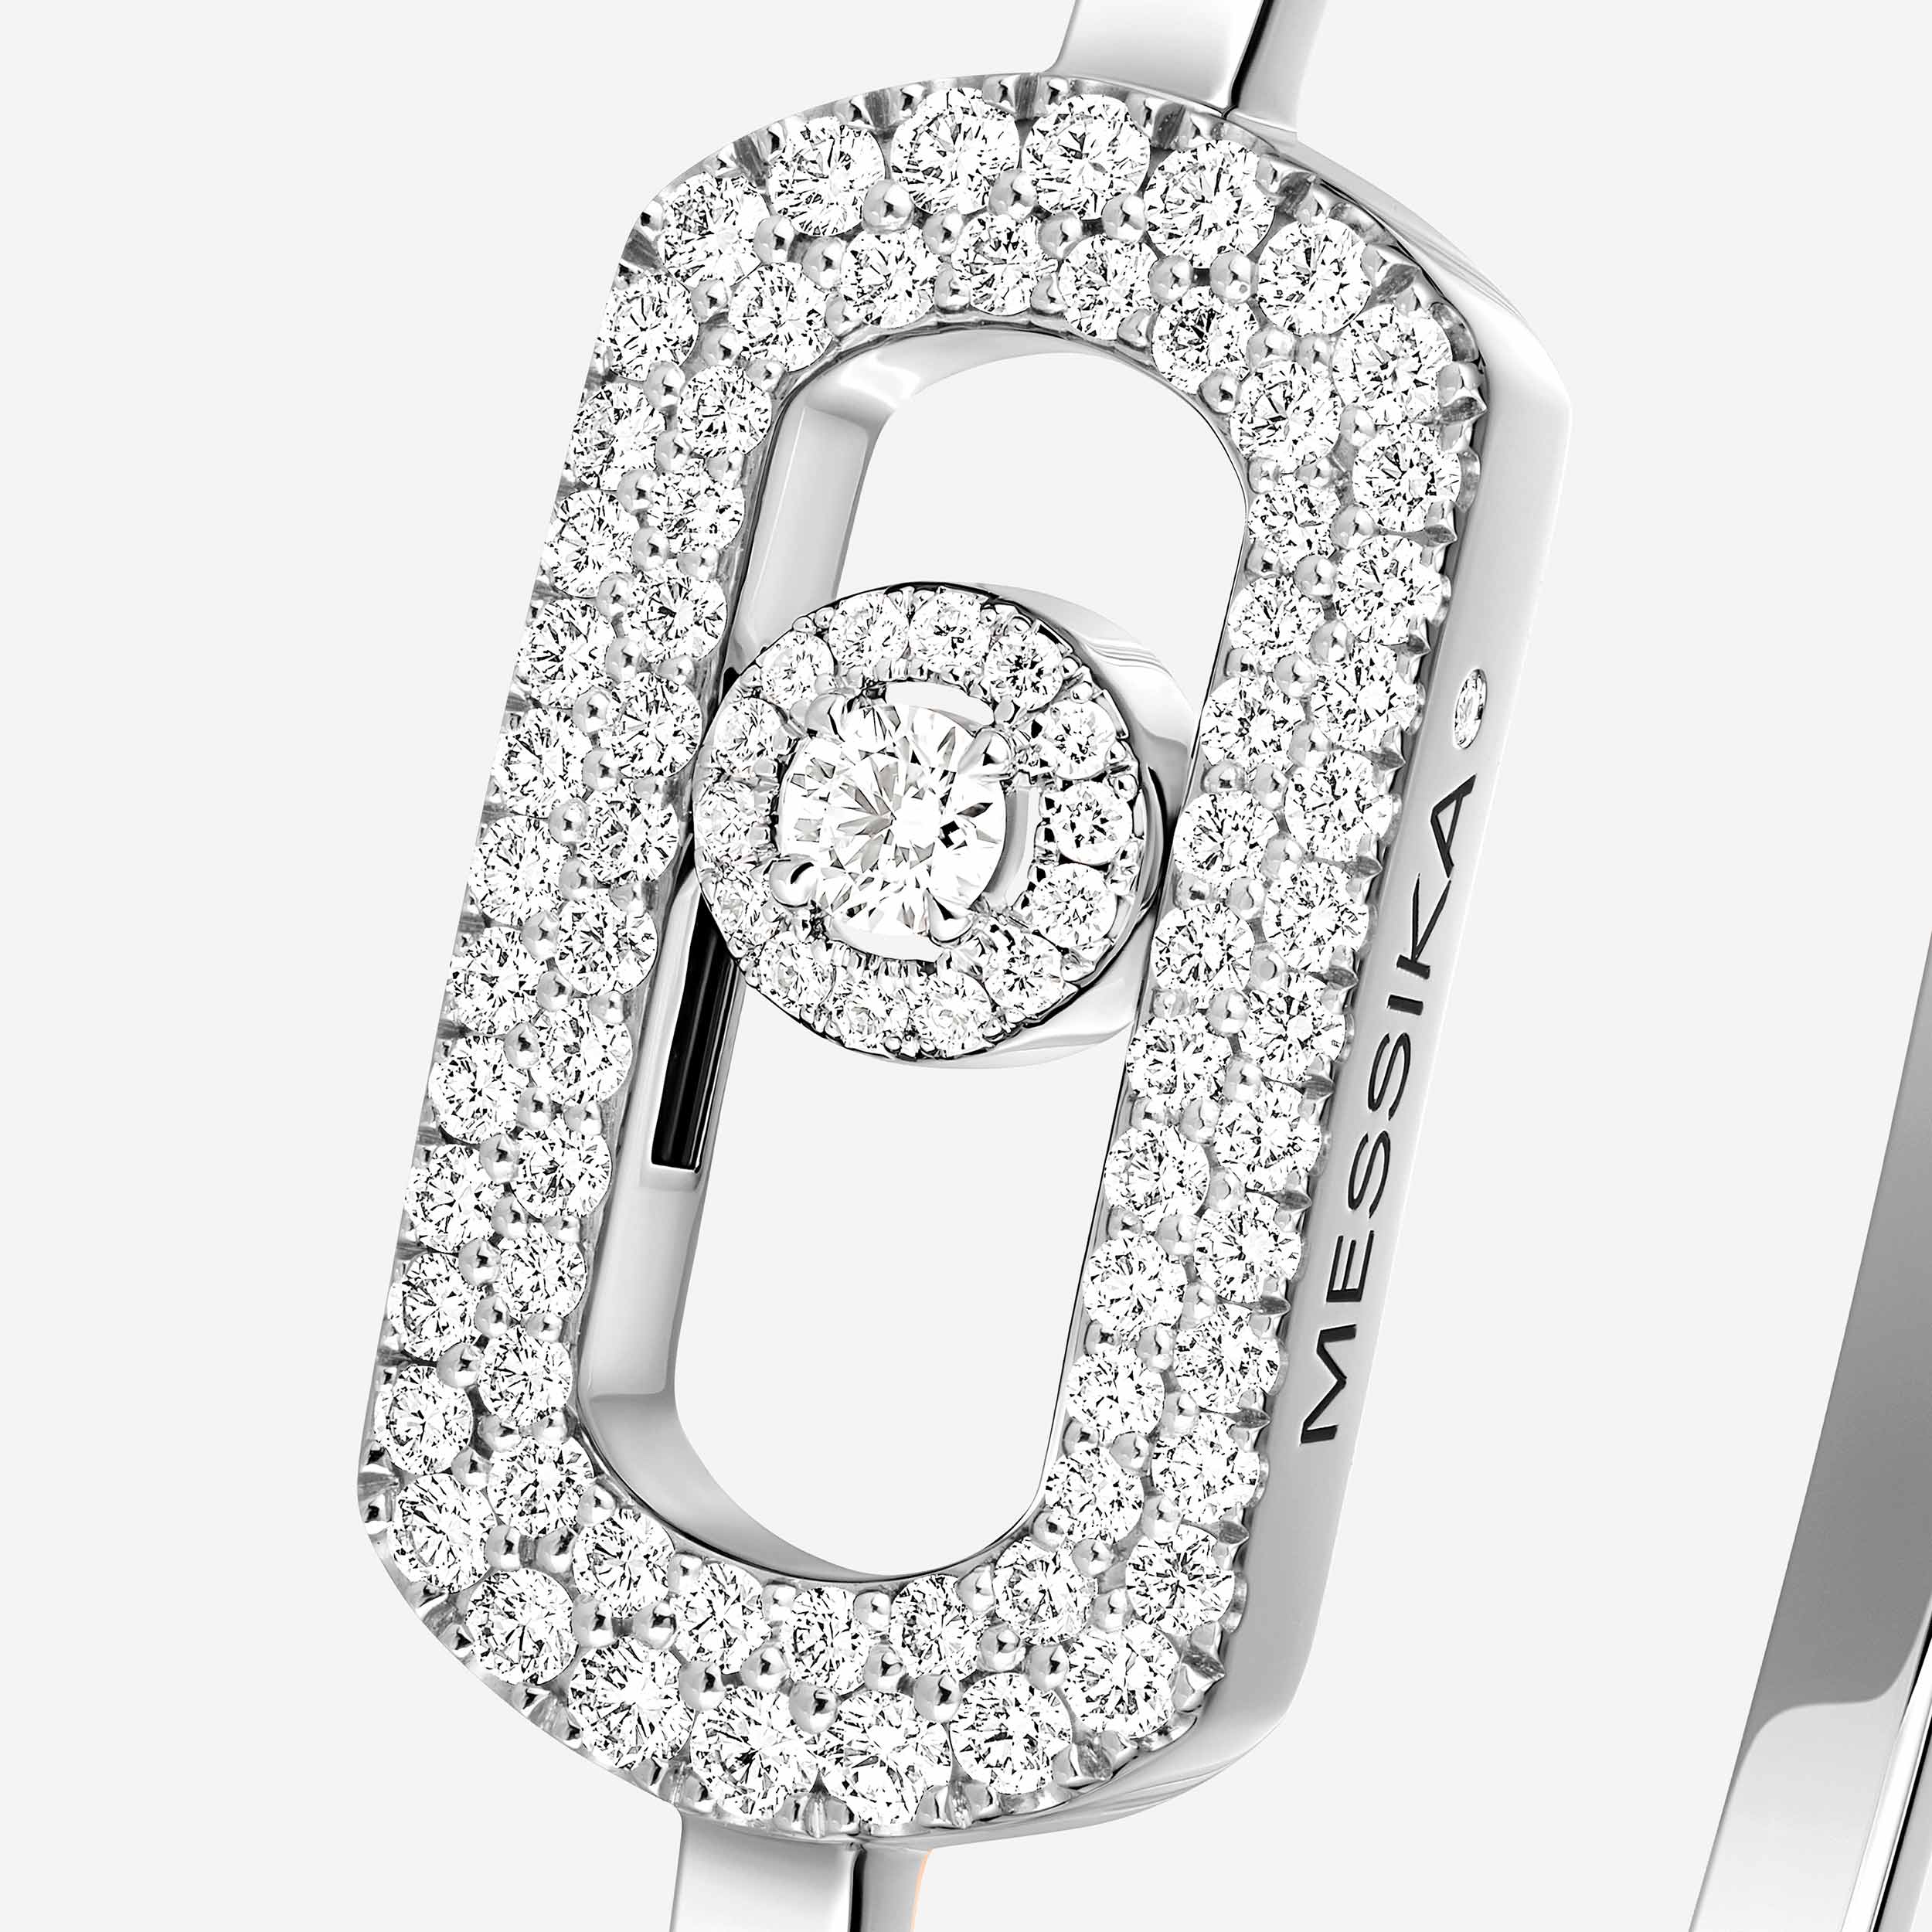 Bracelet For Her White Gold Diamond Jonc So Move Pavé 13428-WG